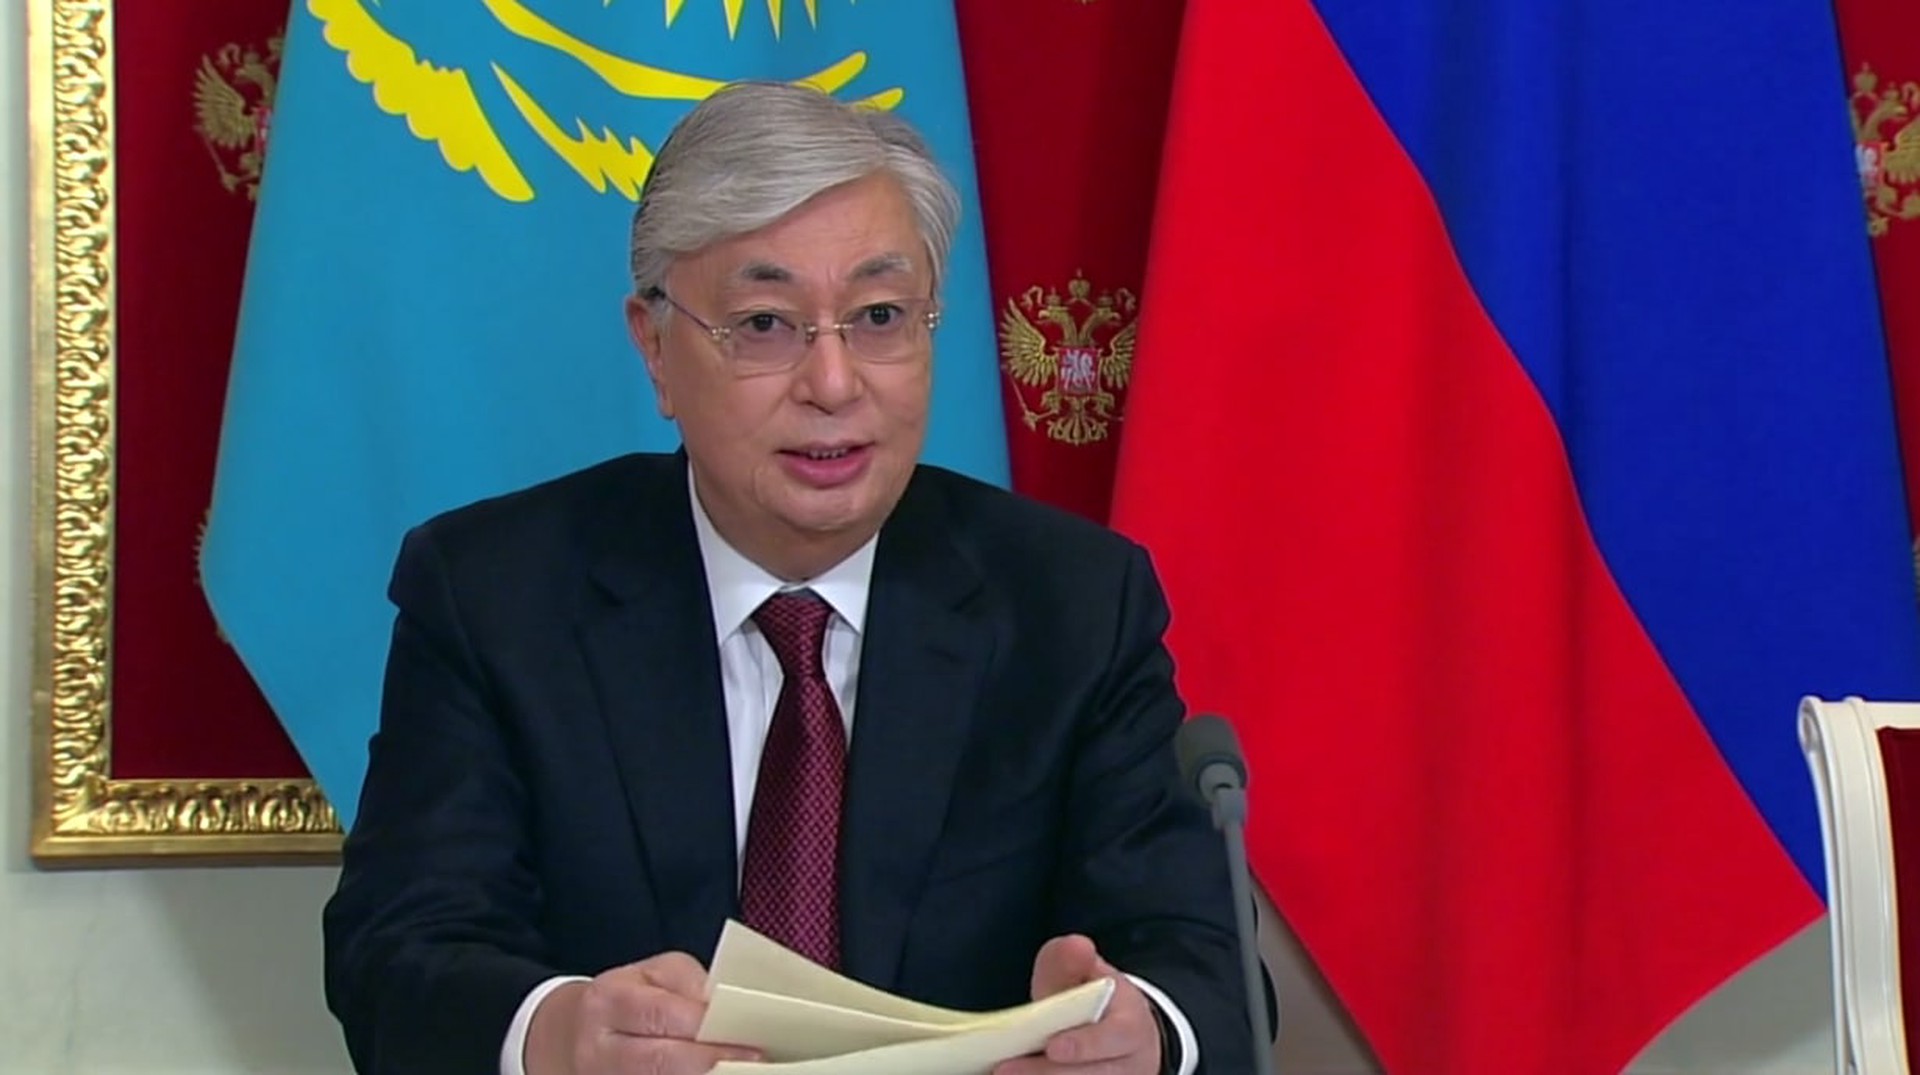 Токаев: В отношениях России и Казахстана есть вопросы, требующие переговоров